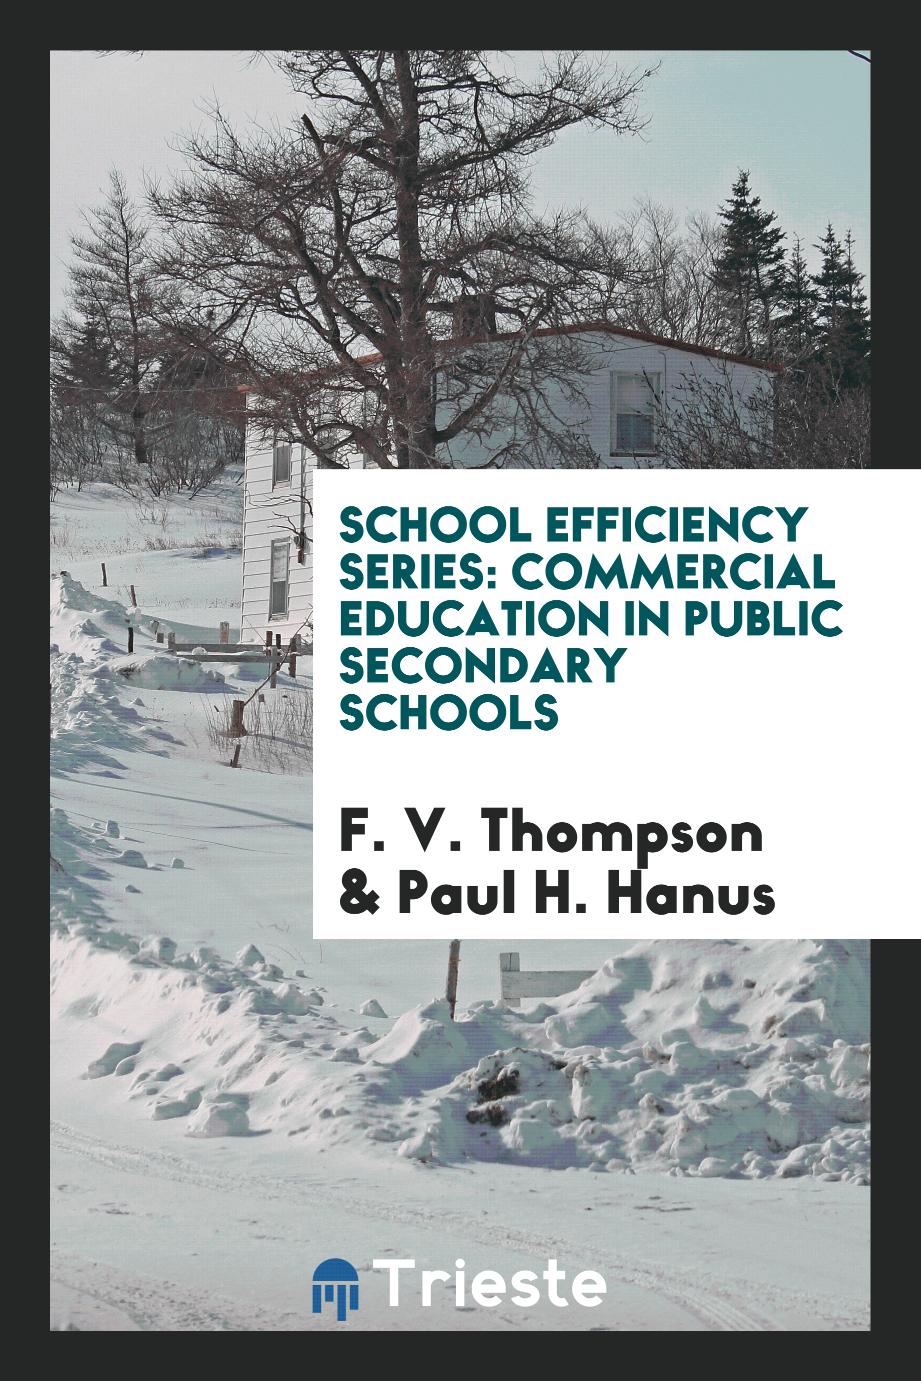 School Efficiency Series: Commercial Education in Public Secondary Schools